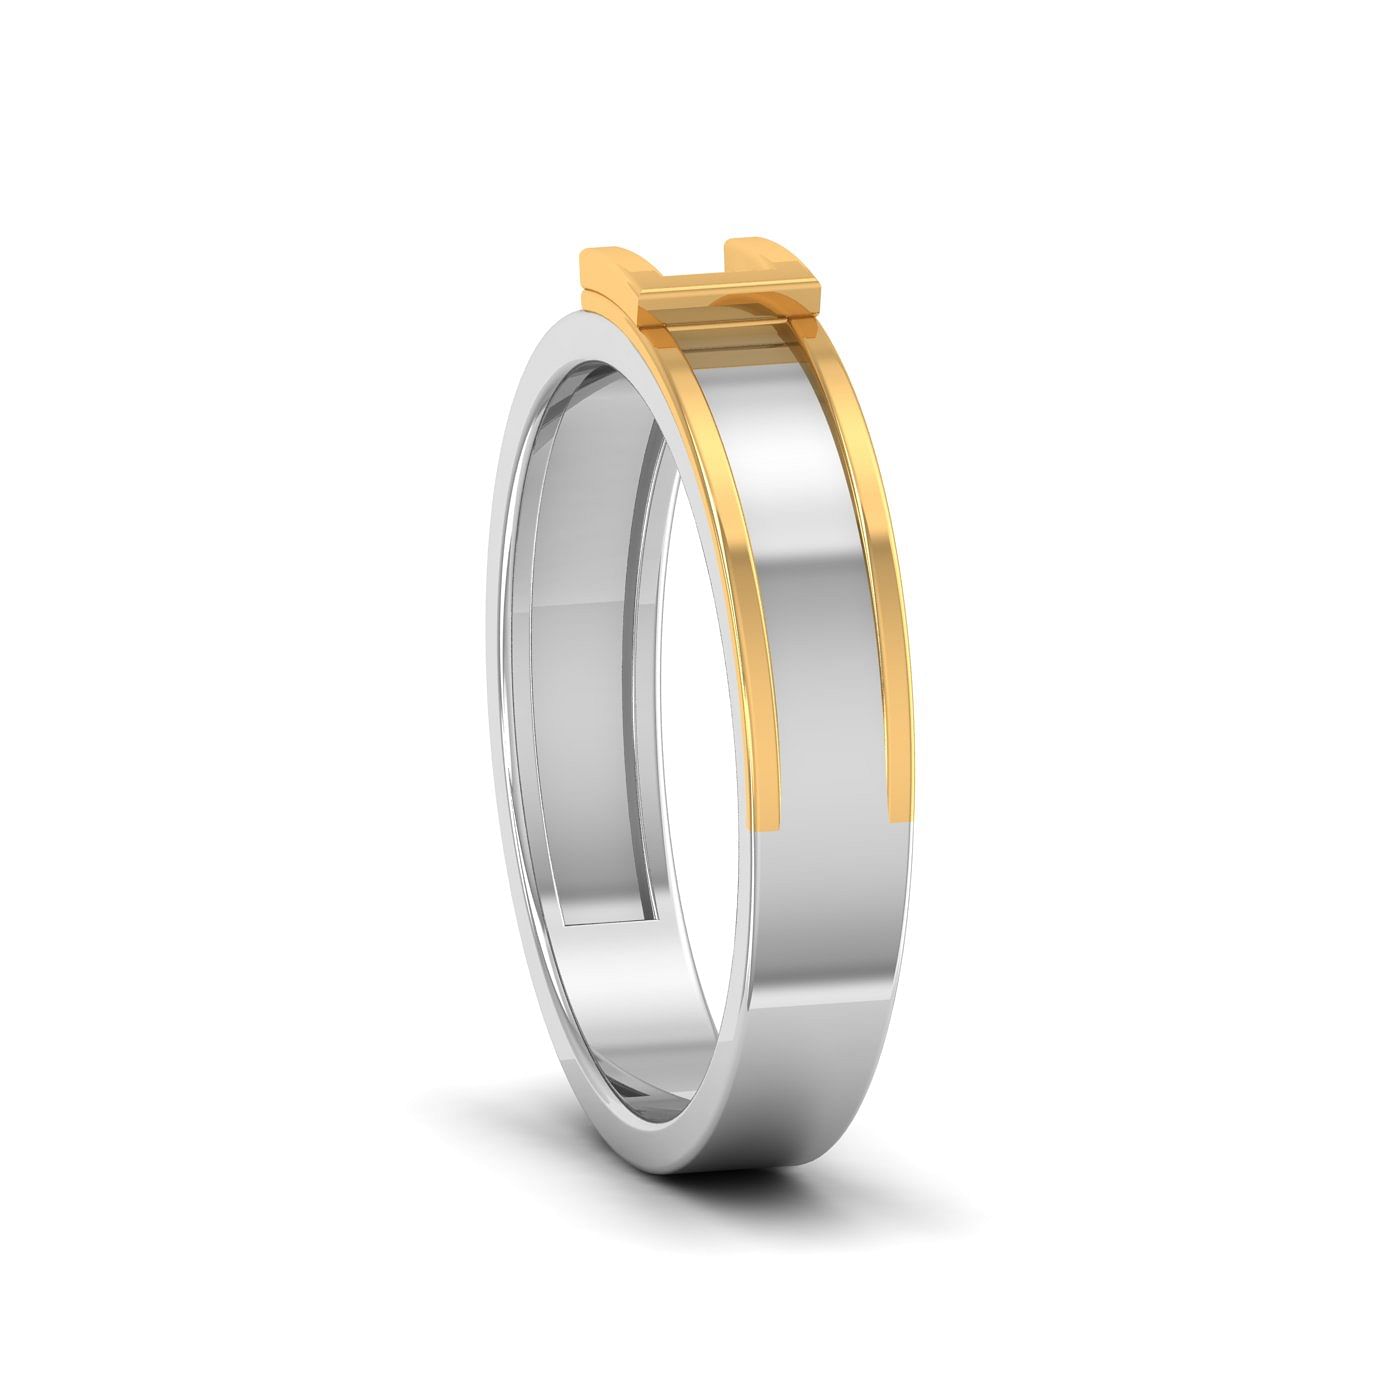 White Gold Lamya Diamond Wedding Ring For Her